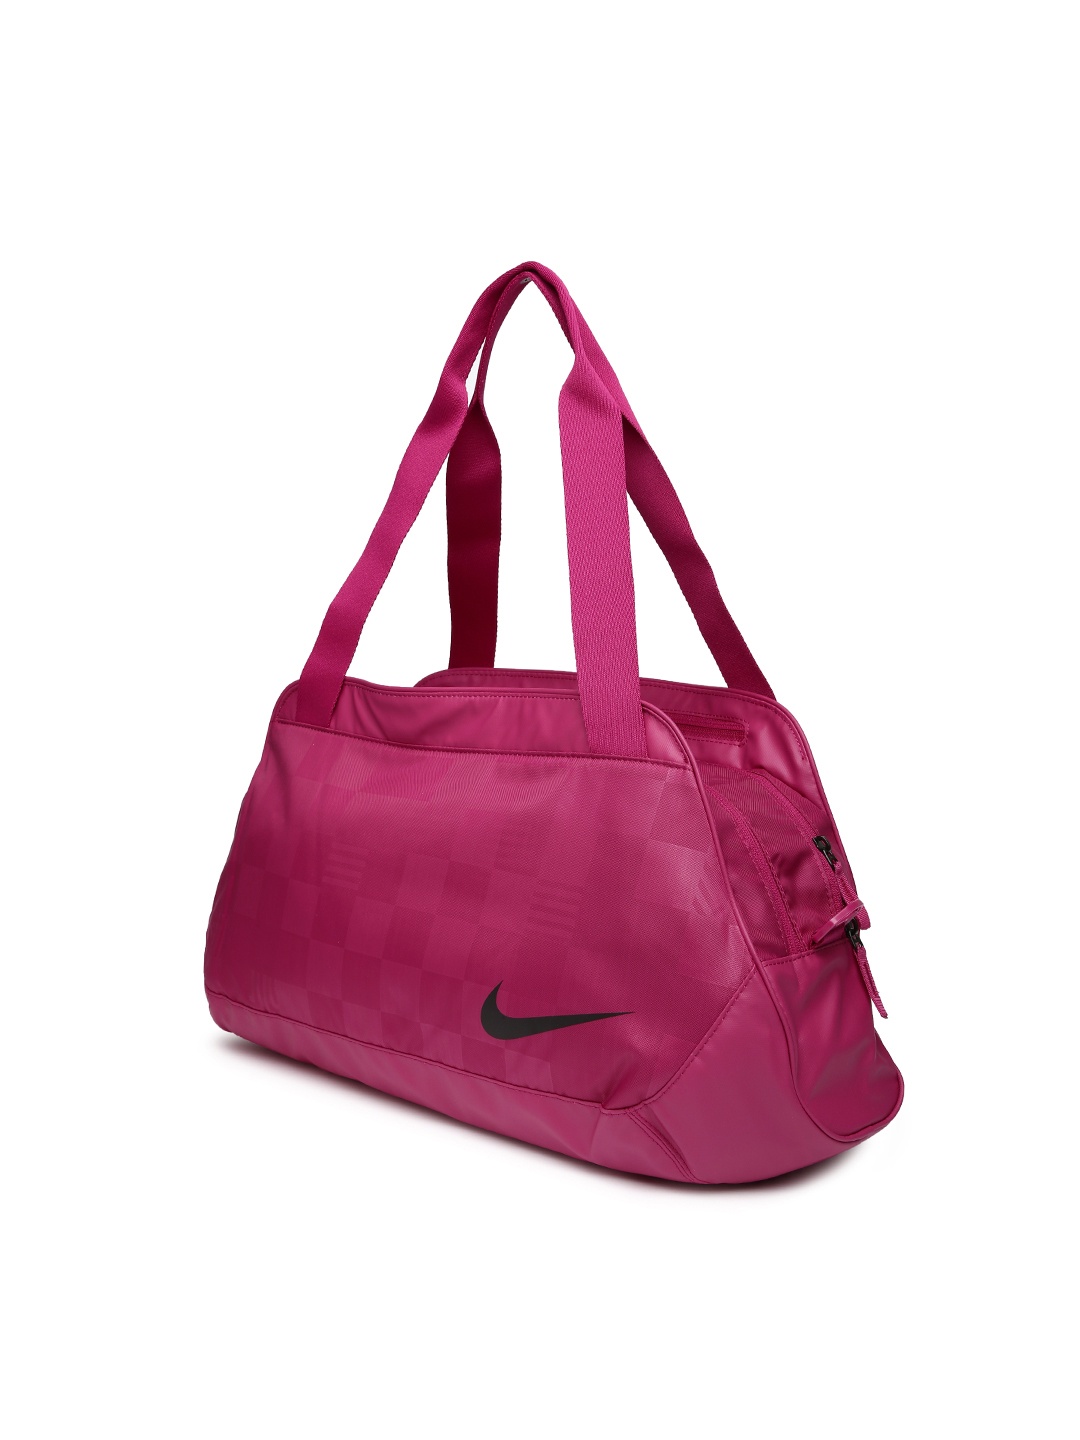 Myntra Nike Women Purple C72 Duffle Bag 857142 | Buy Myntra Nike Duffle ...